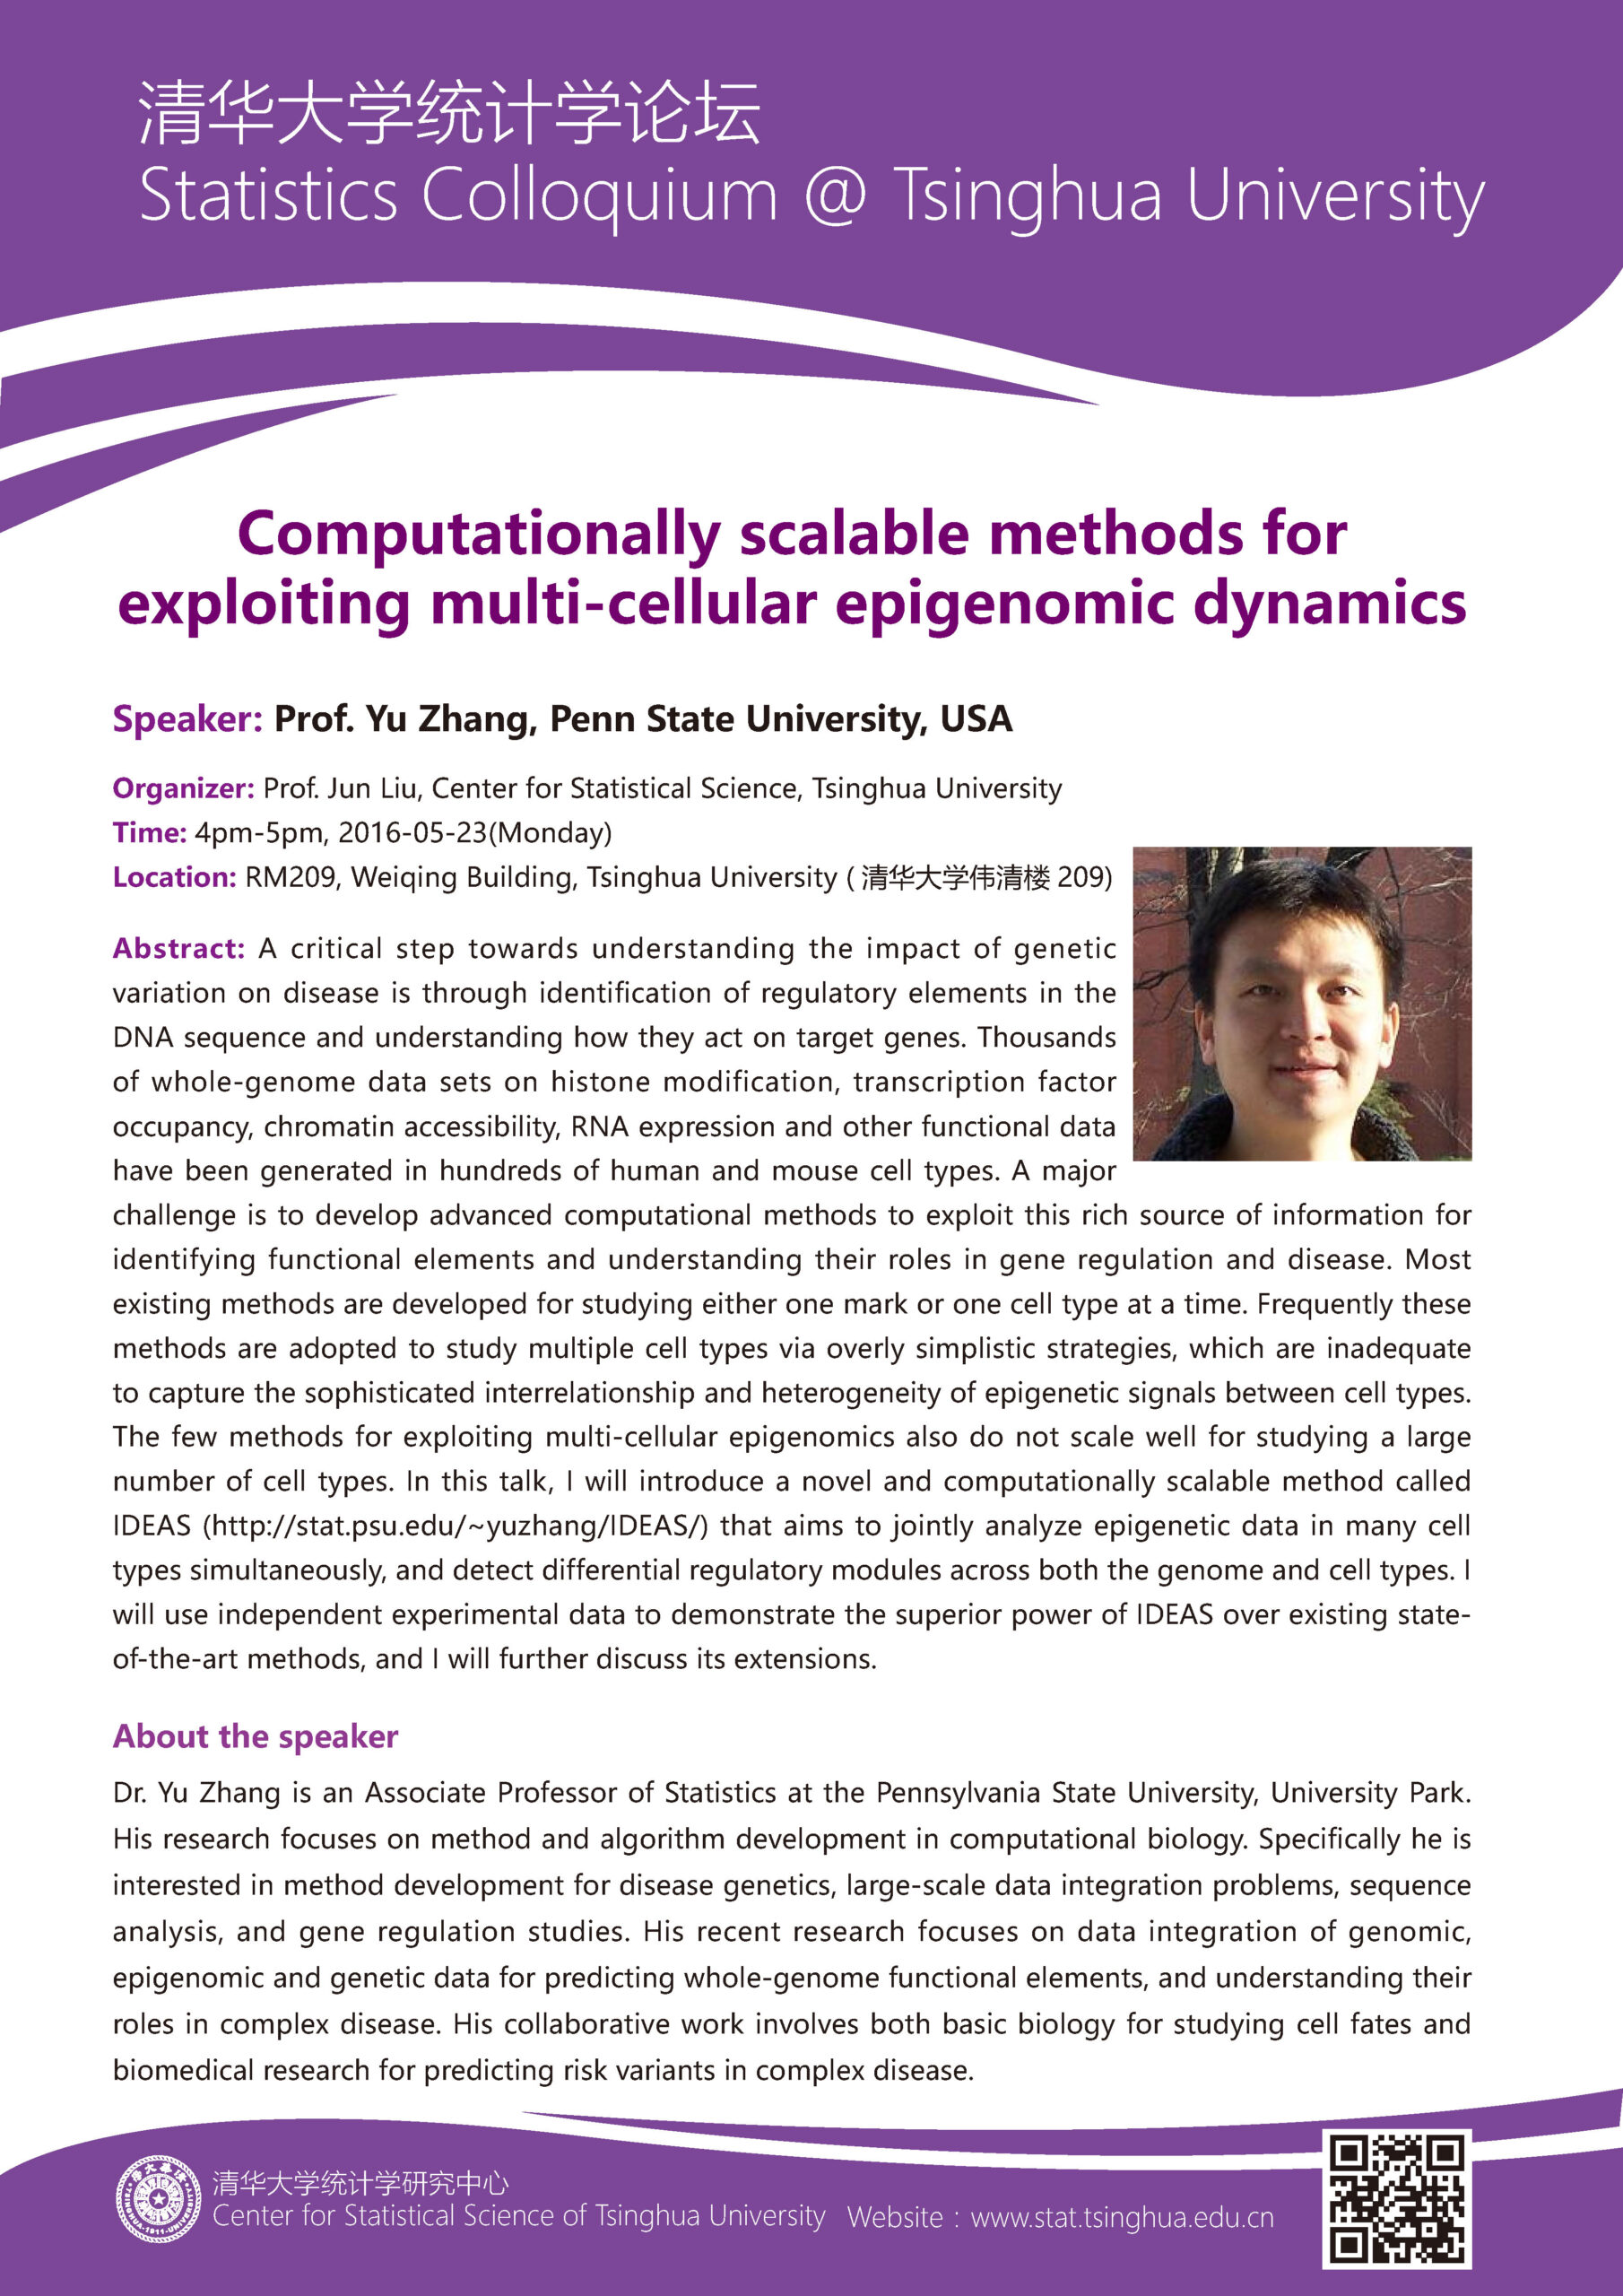 【统计学论坛】Computationally scalable methods for exploiting multi-cellular epigenomic dynamics